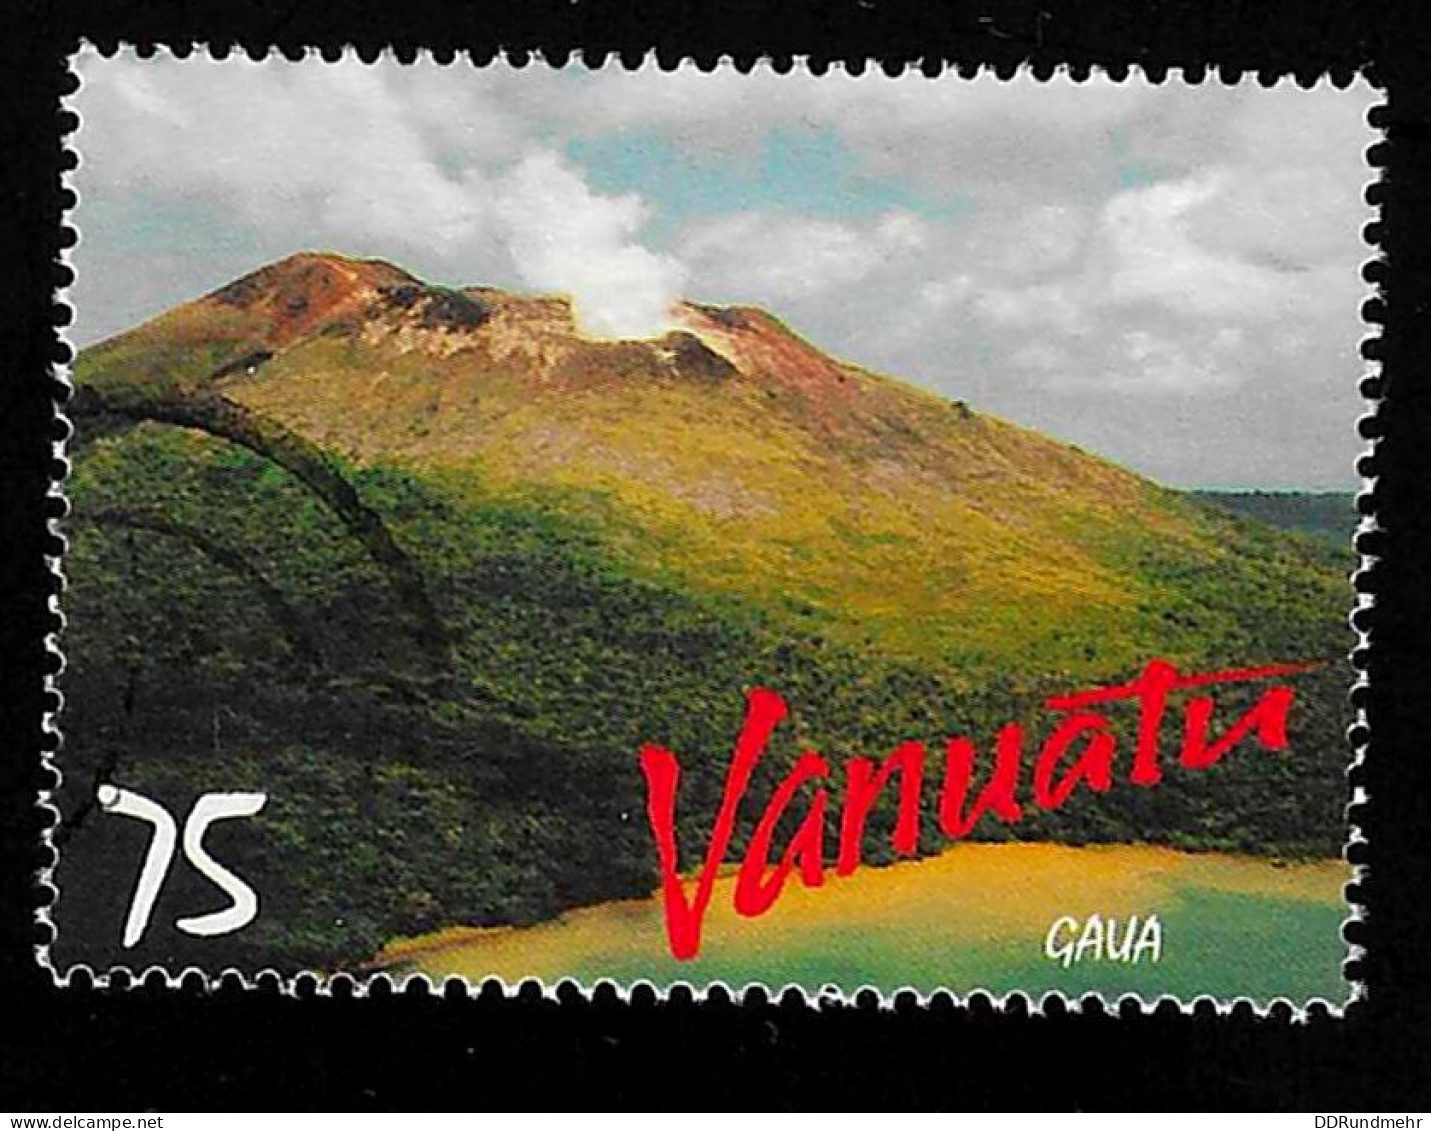 1998 Vulkane  Michel VU 1073 Stamp Number VU 730 Yvert Et Tellier VU 1061 Stanley Gibbons VU 786 Used - Vanuatu (1980-...)